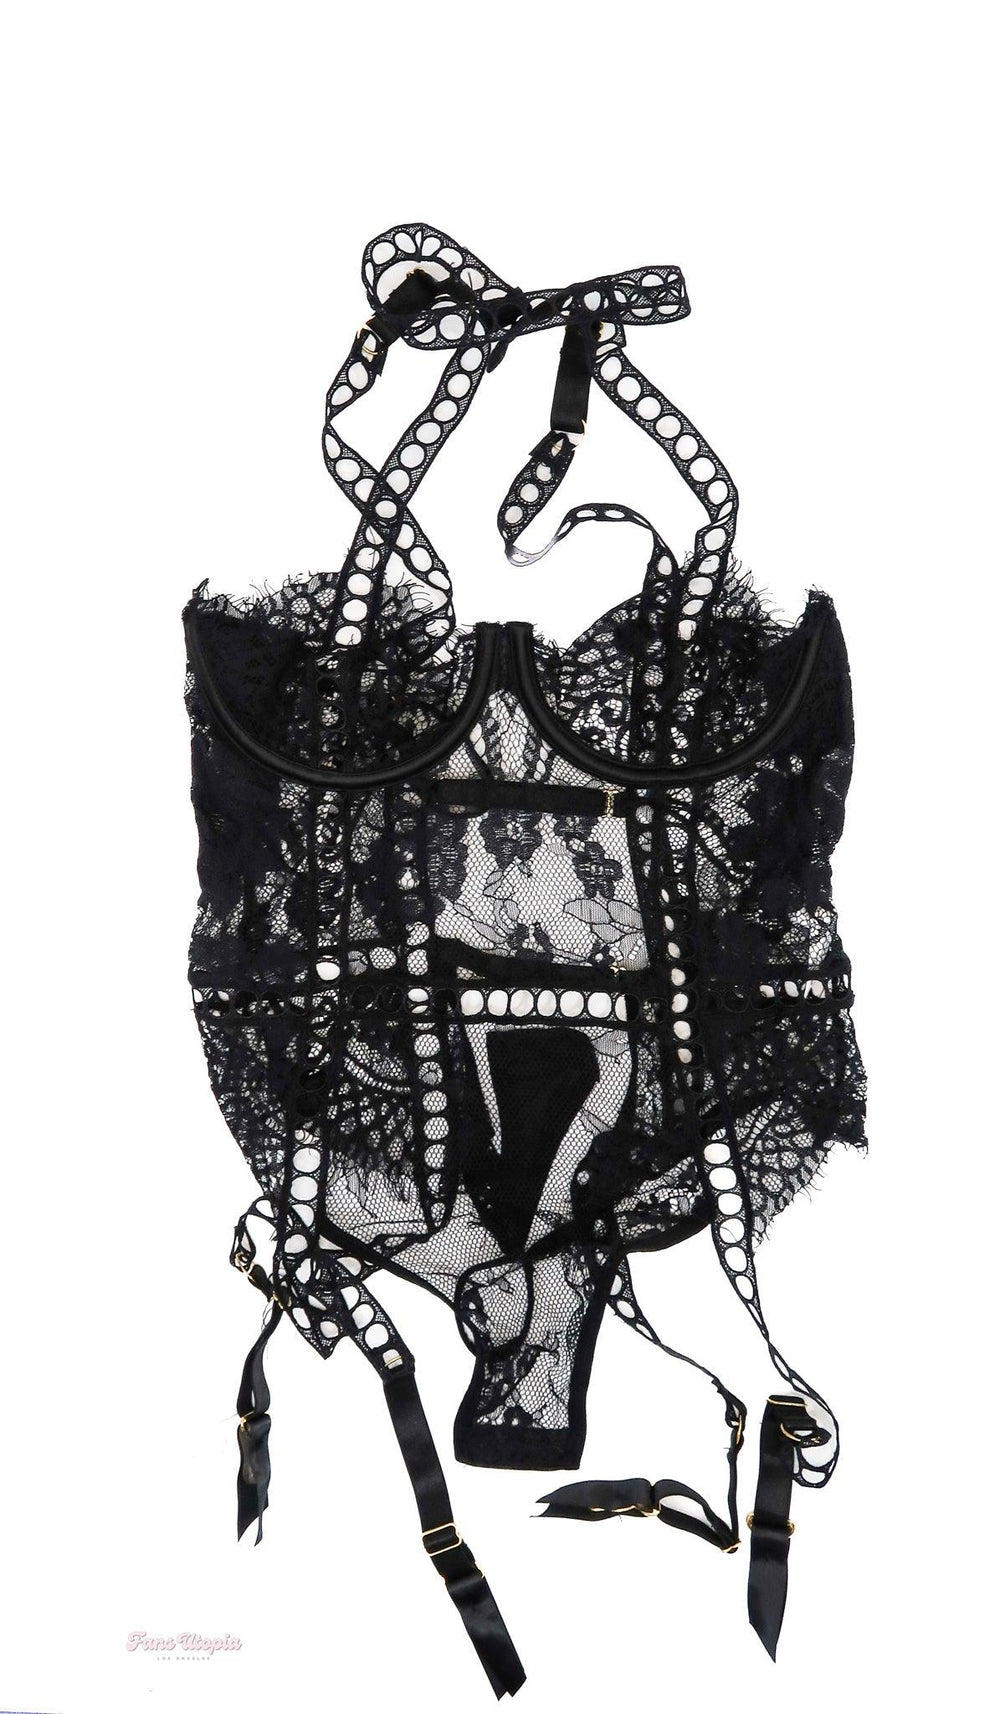 Cherie DeVille Black Lace Bodysuit With Leg Straps + Signed Polaroid - FANS UTOPIA